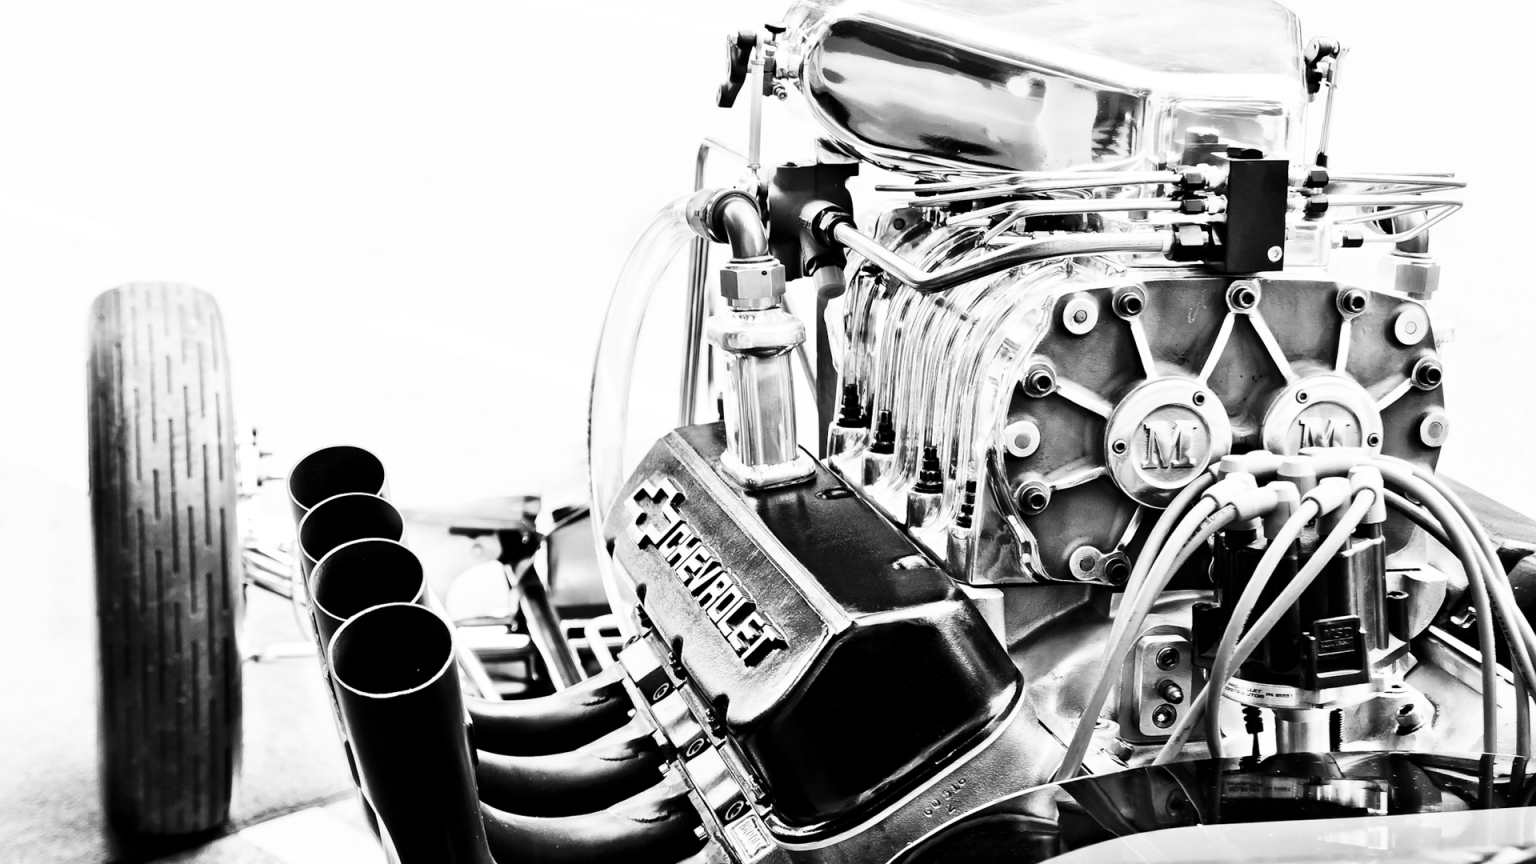 Chevrolet Corvette Engine for 1536 x 864 HDTV resolution